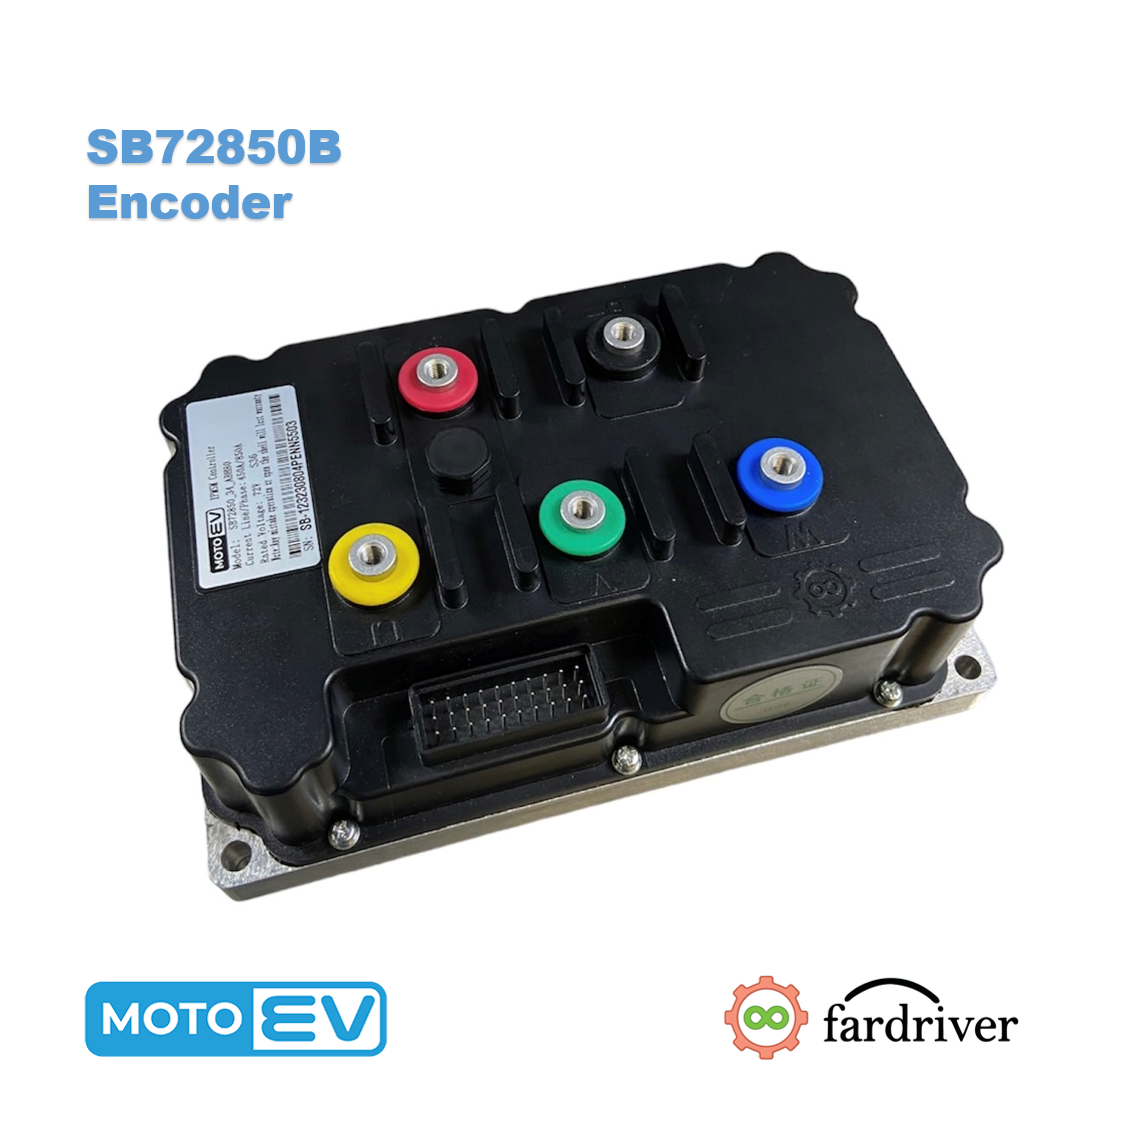 SB72850B Encoder 450A/850A